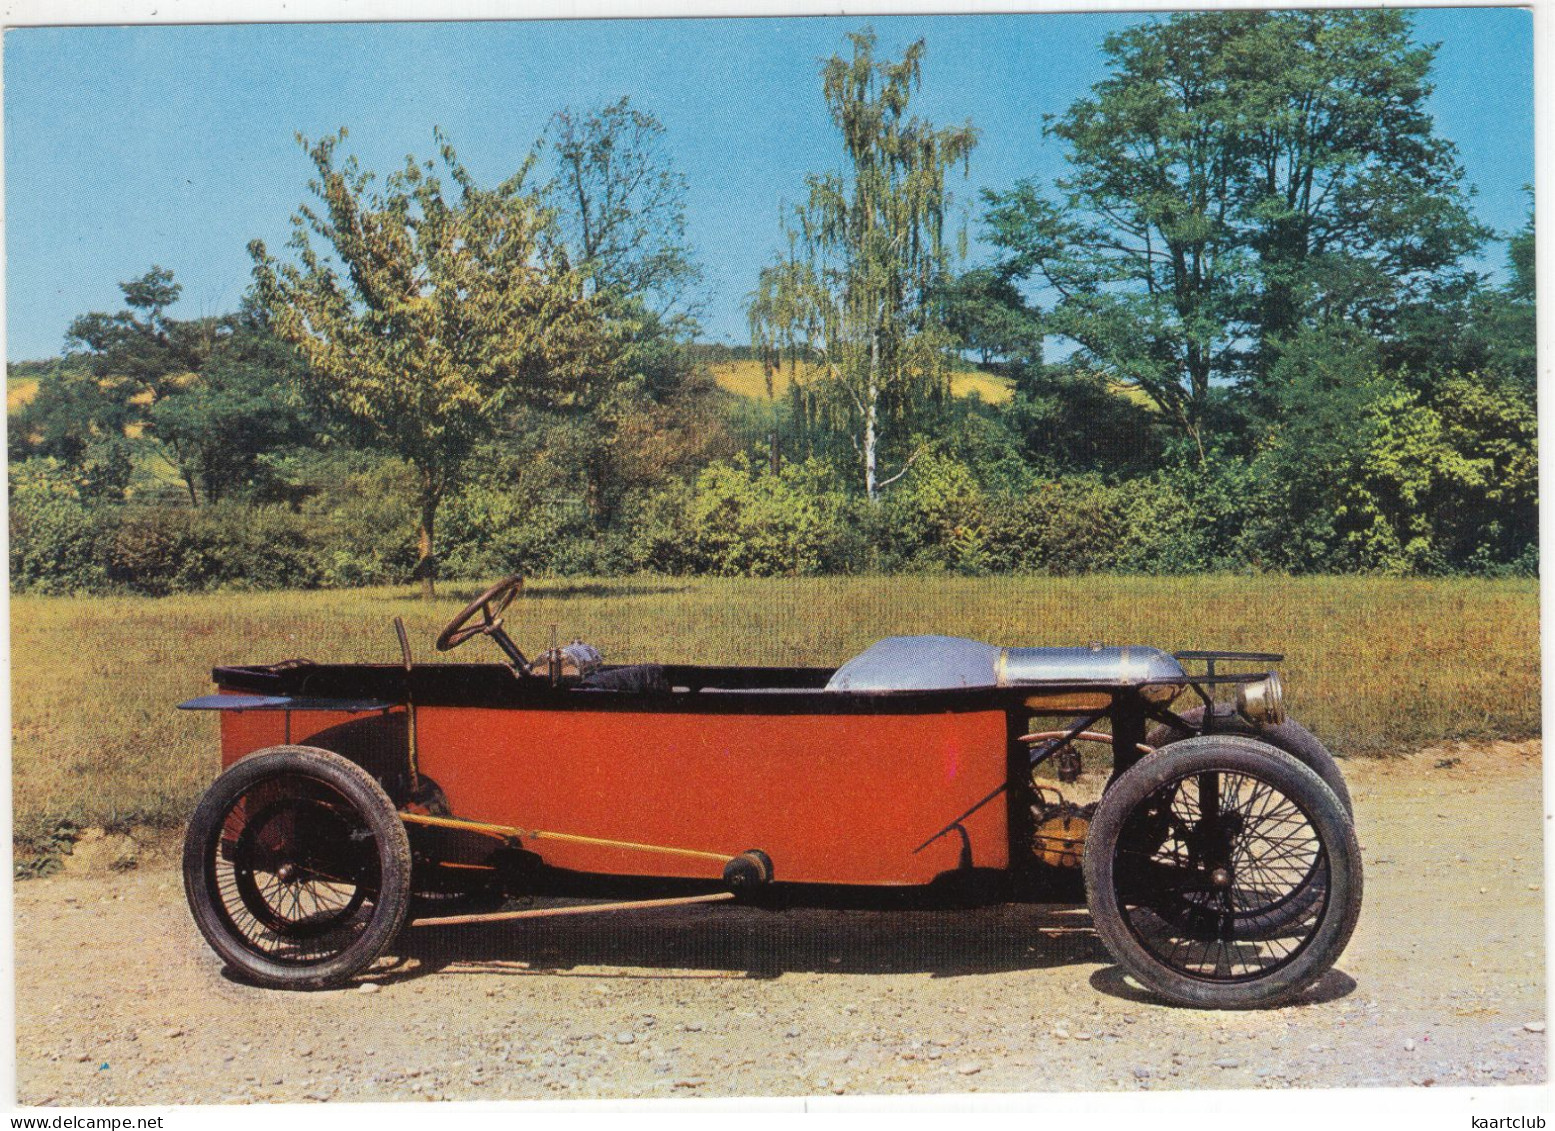 BEDELIA - Vitesse 100km/heure Au Mans En 1913 - Moteur 2 Cylindres En V - Chassis Bois -  (France) - Passenger Cars